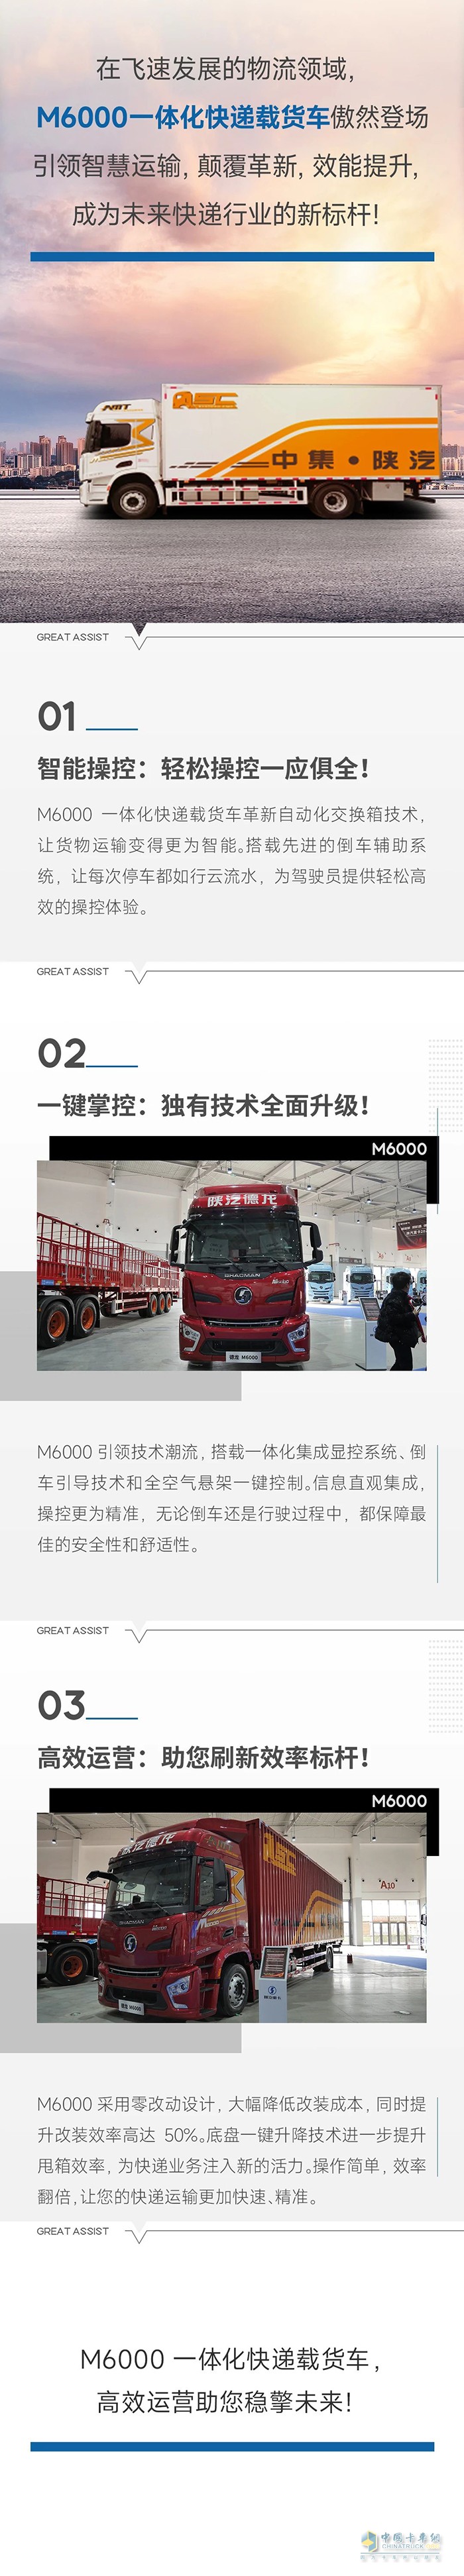 中集陕汽M6000一体化快递载货车：颠覆效率，引领未来